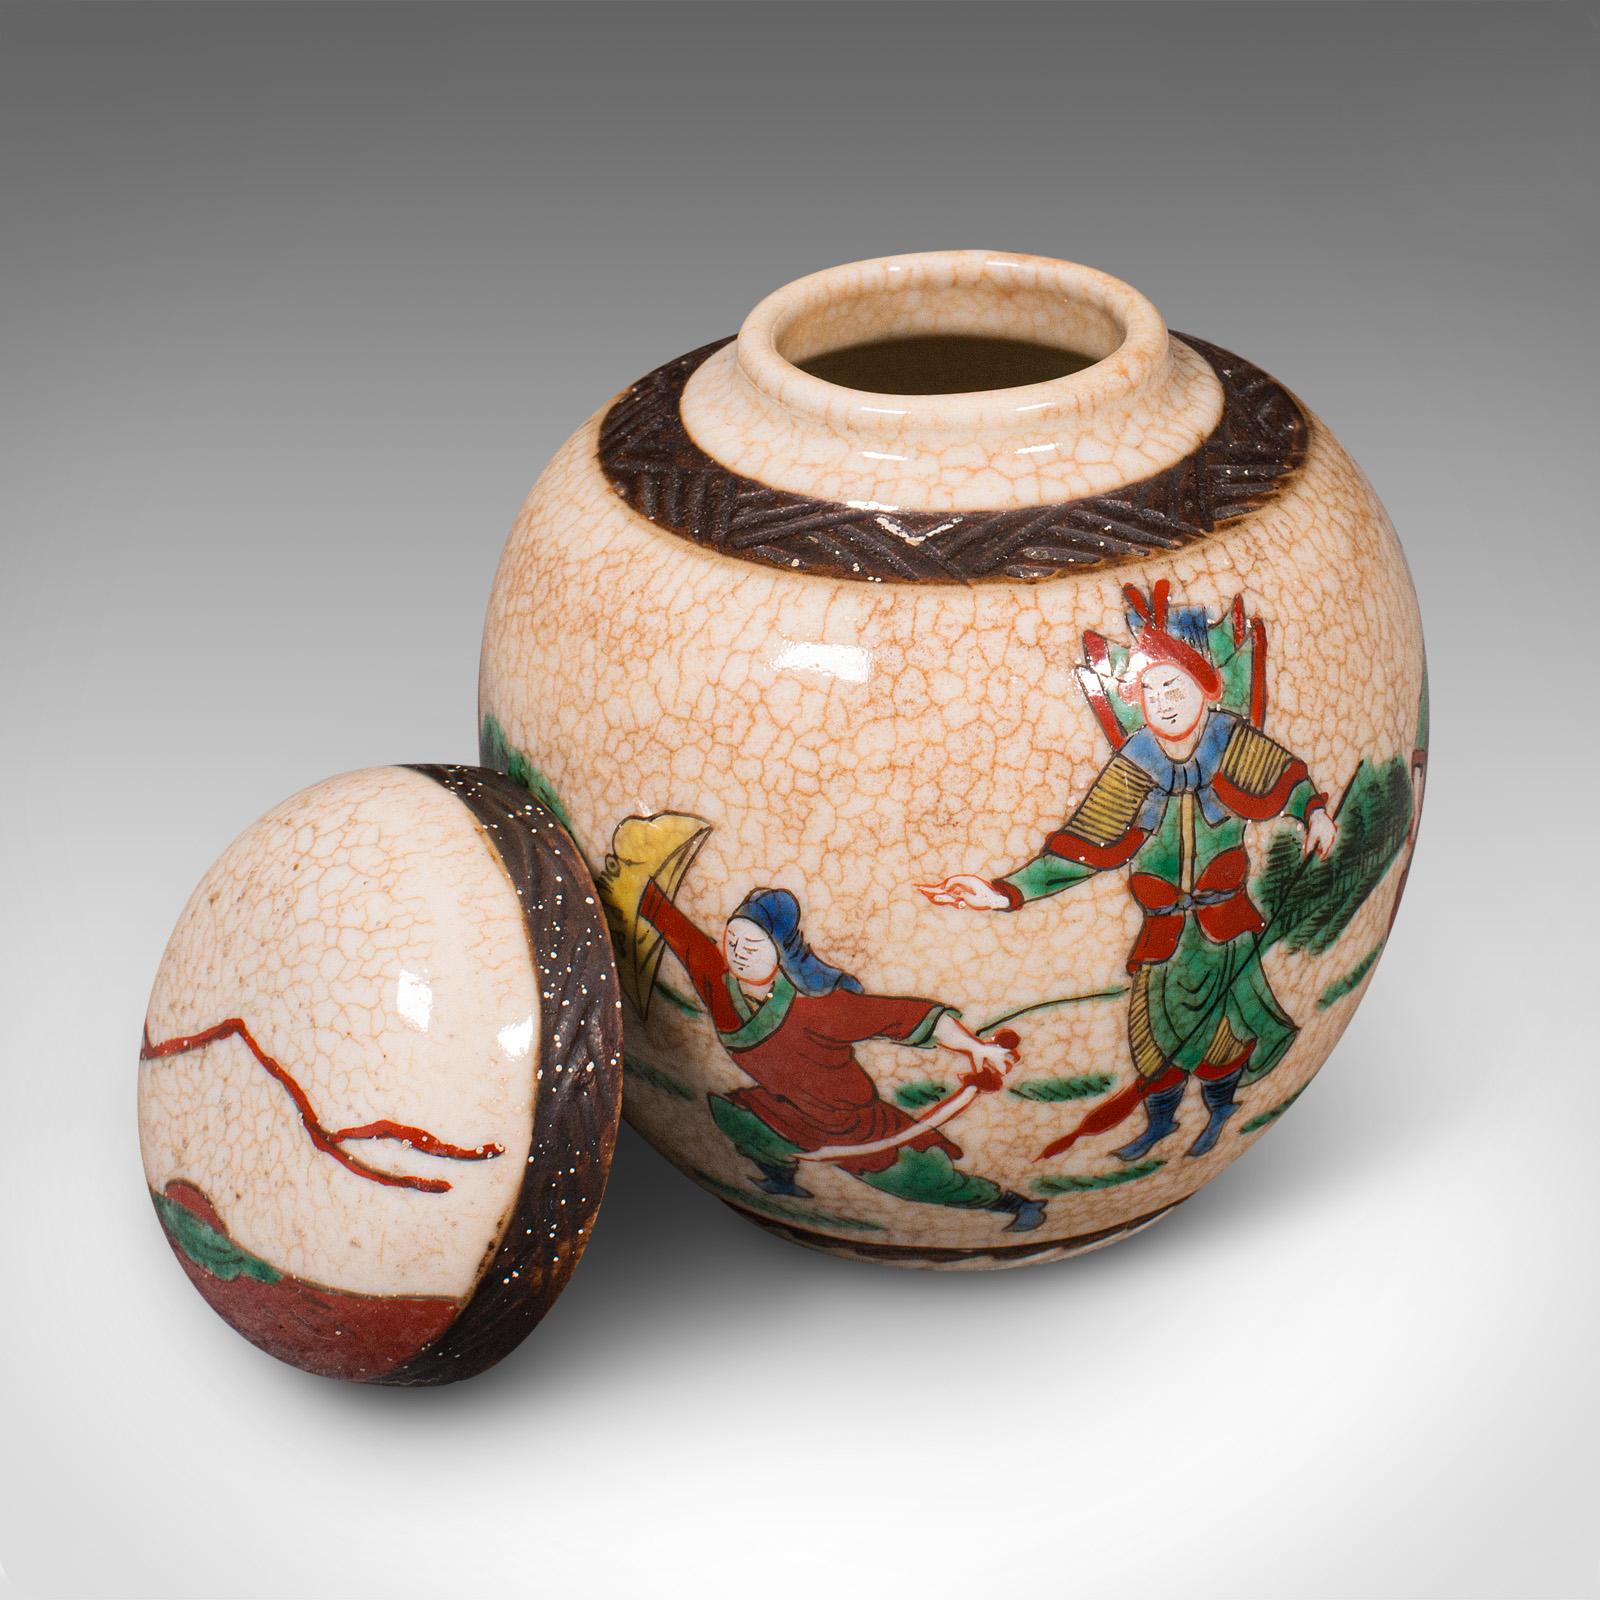 Il s'agit d'un petit pot à épices ancien. Pot décoratif japonais en céramique, datant de la fin de la période victorienne, vers 1900.

Décor traditionnel attrayant avec des couleurs gaies
Présentant une patine d'ancienneté souhaitable et en bon